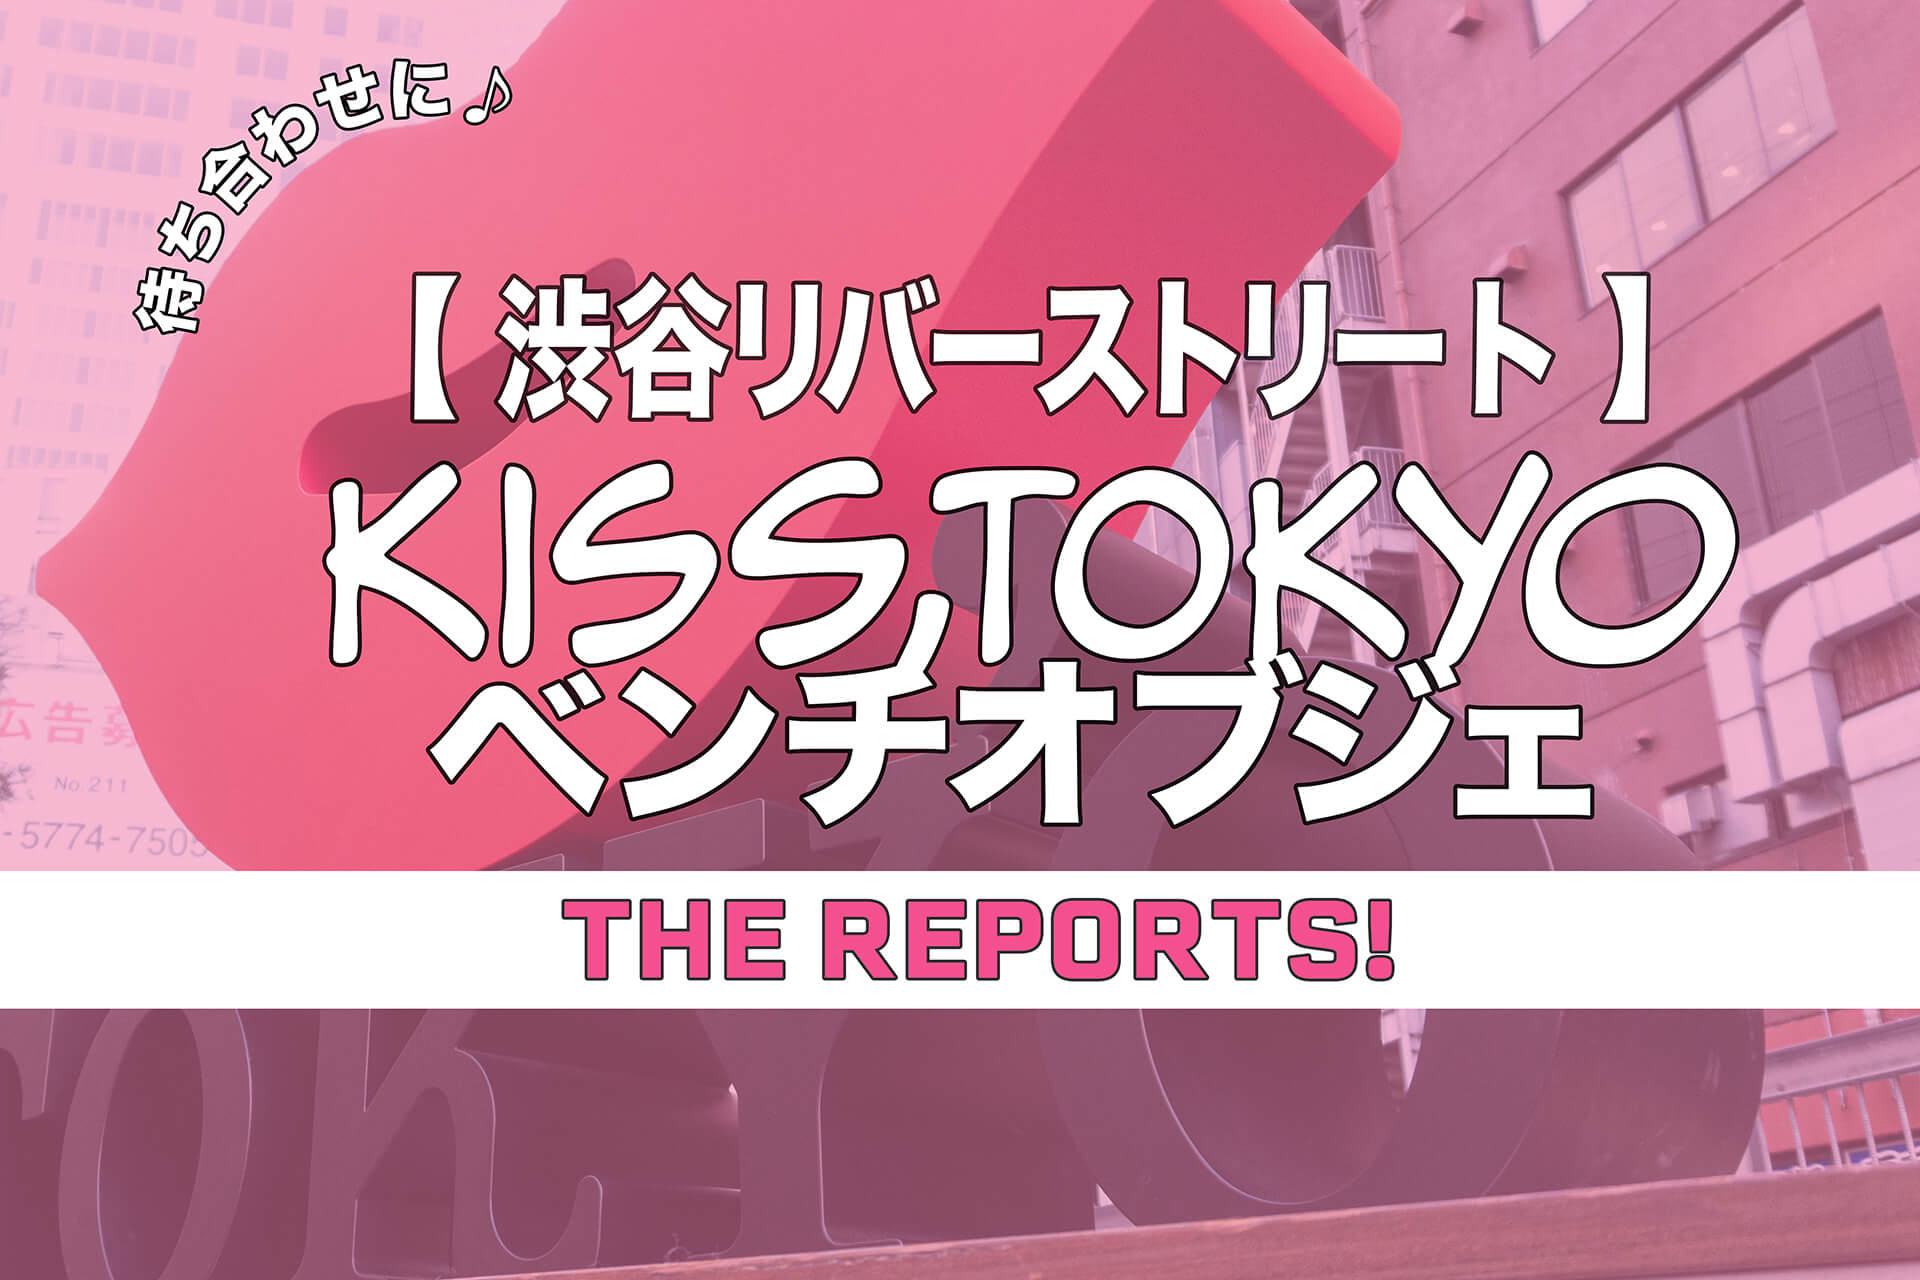 渋谷リバーストリート「KISS,TOKYO ベンチオブジェ」